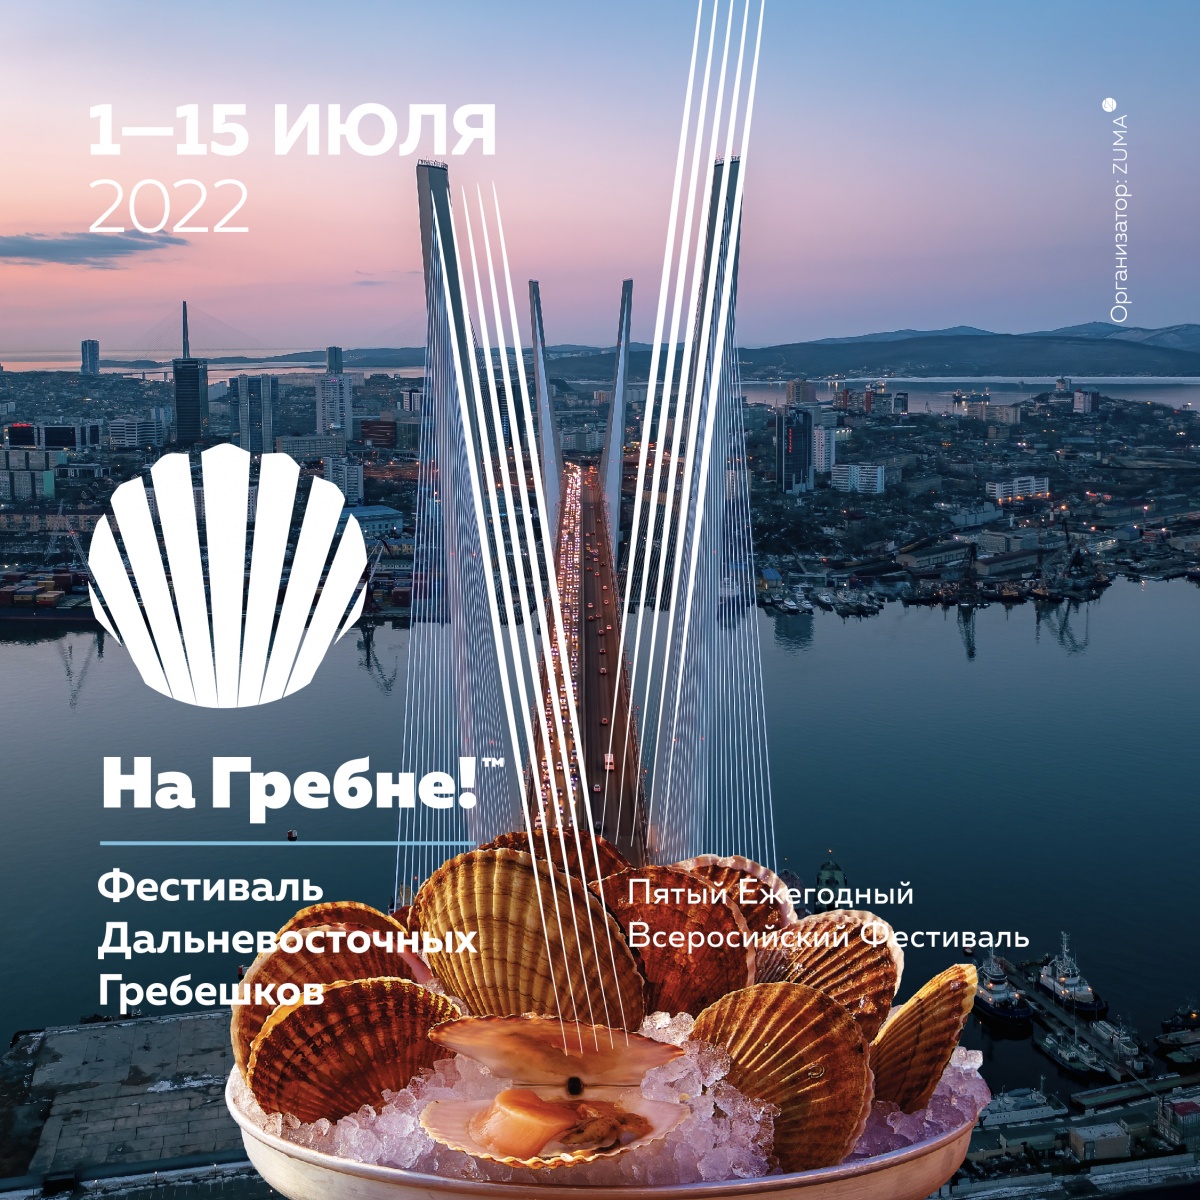 Всероссийский фестиваль гребешка родом из Владивостока: «На Гребне!» стартует 1 июля